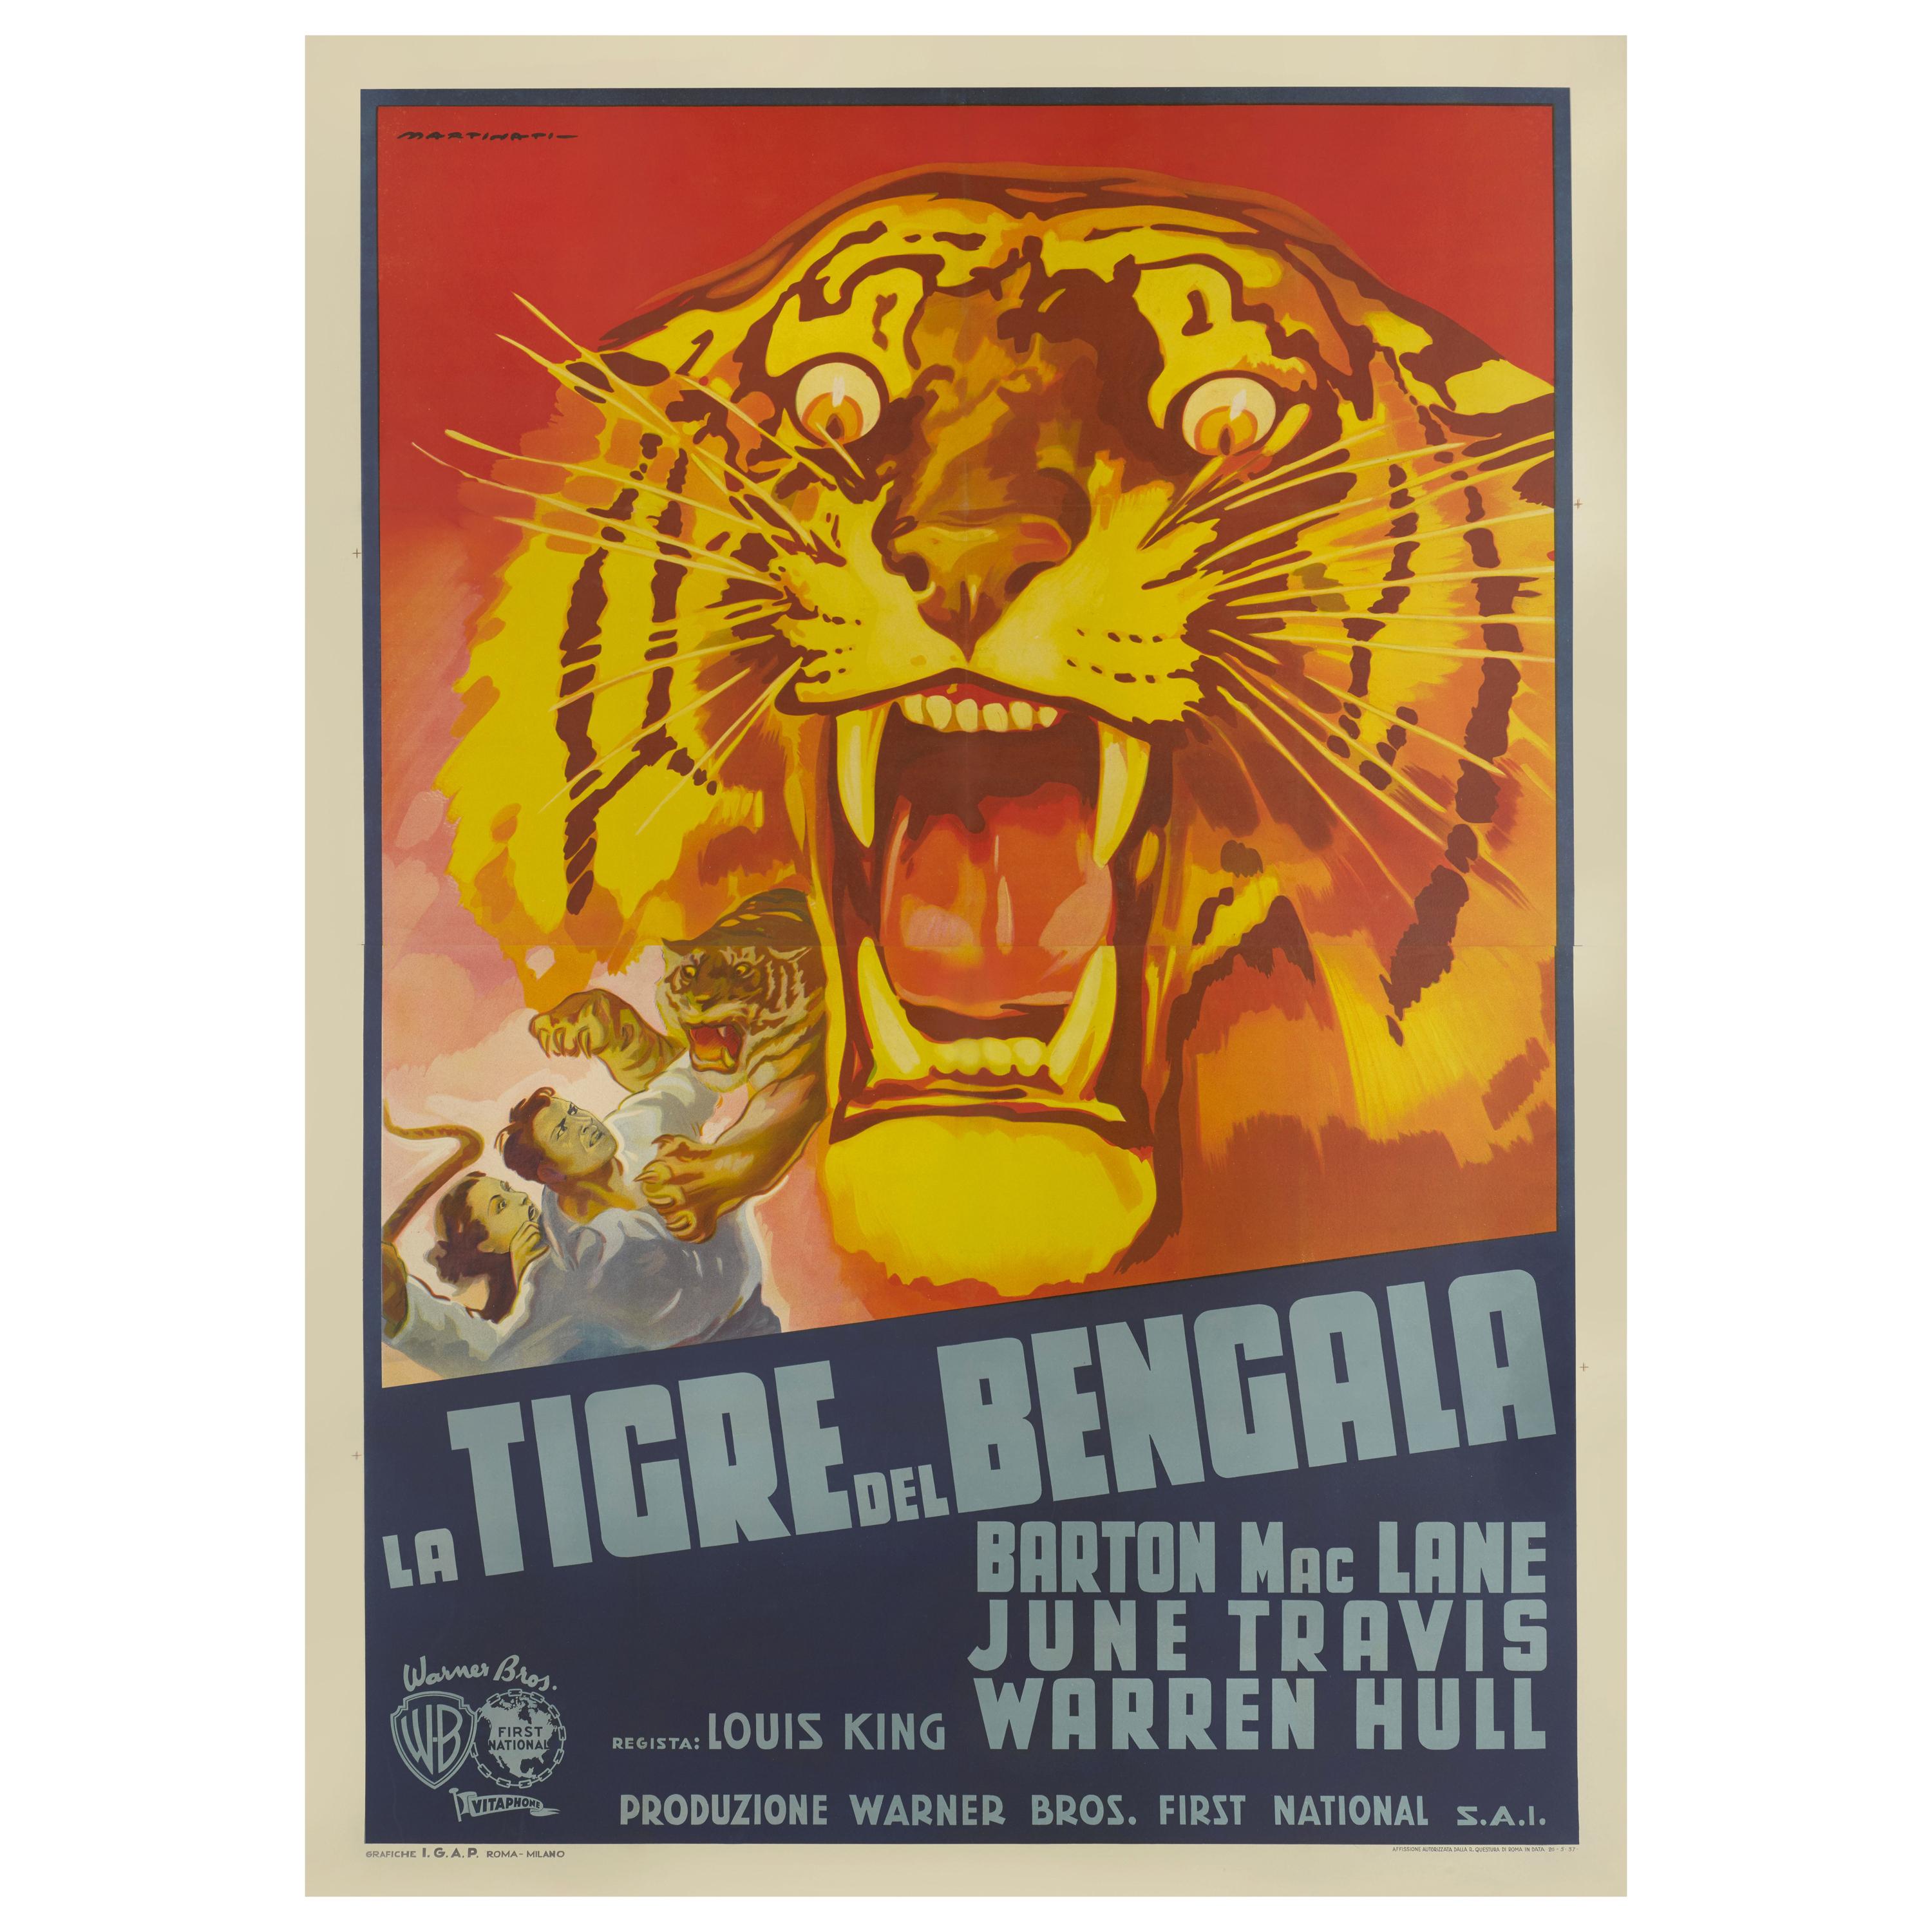 Tiger / La Tigre del Bengala